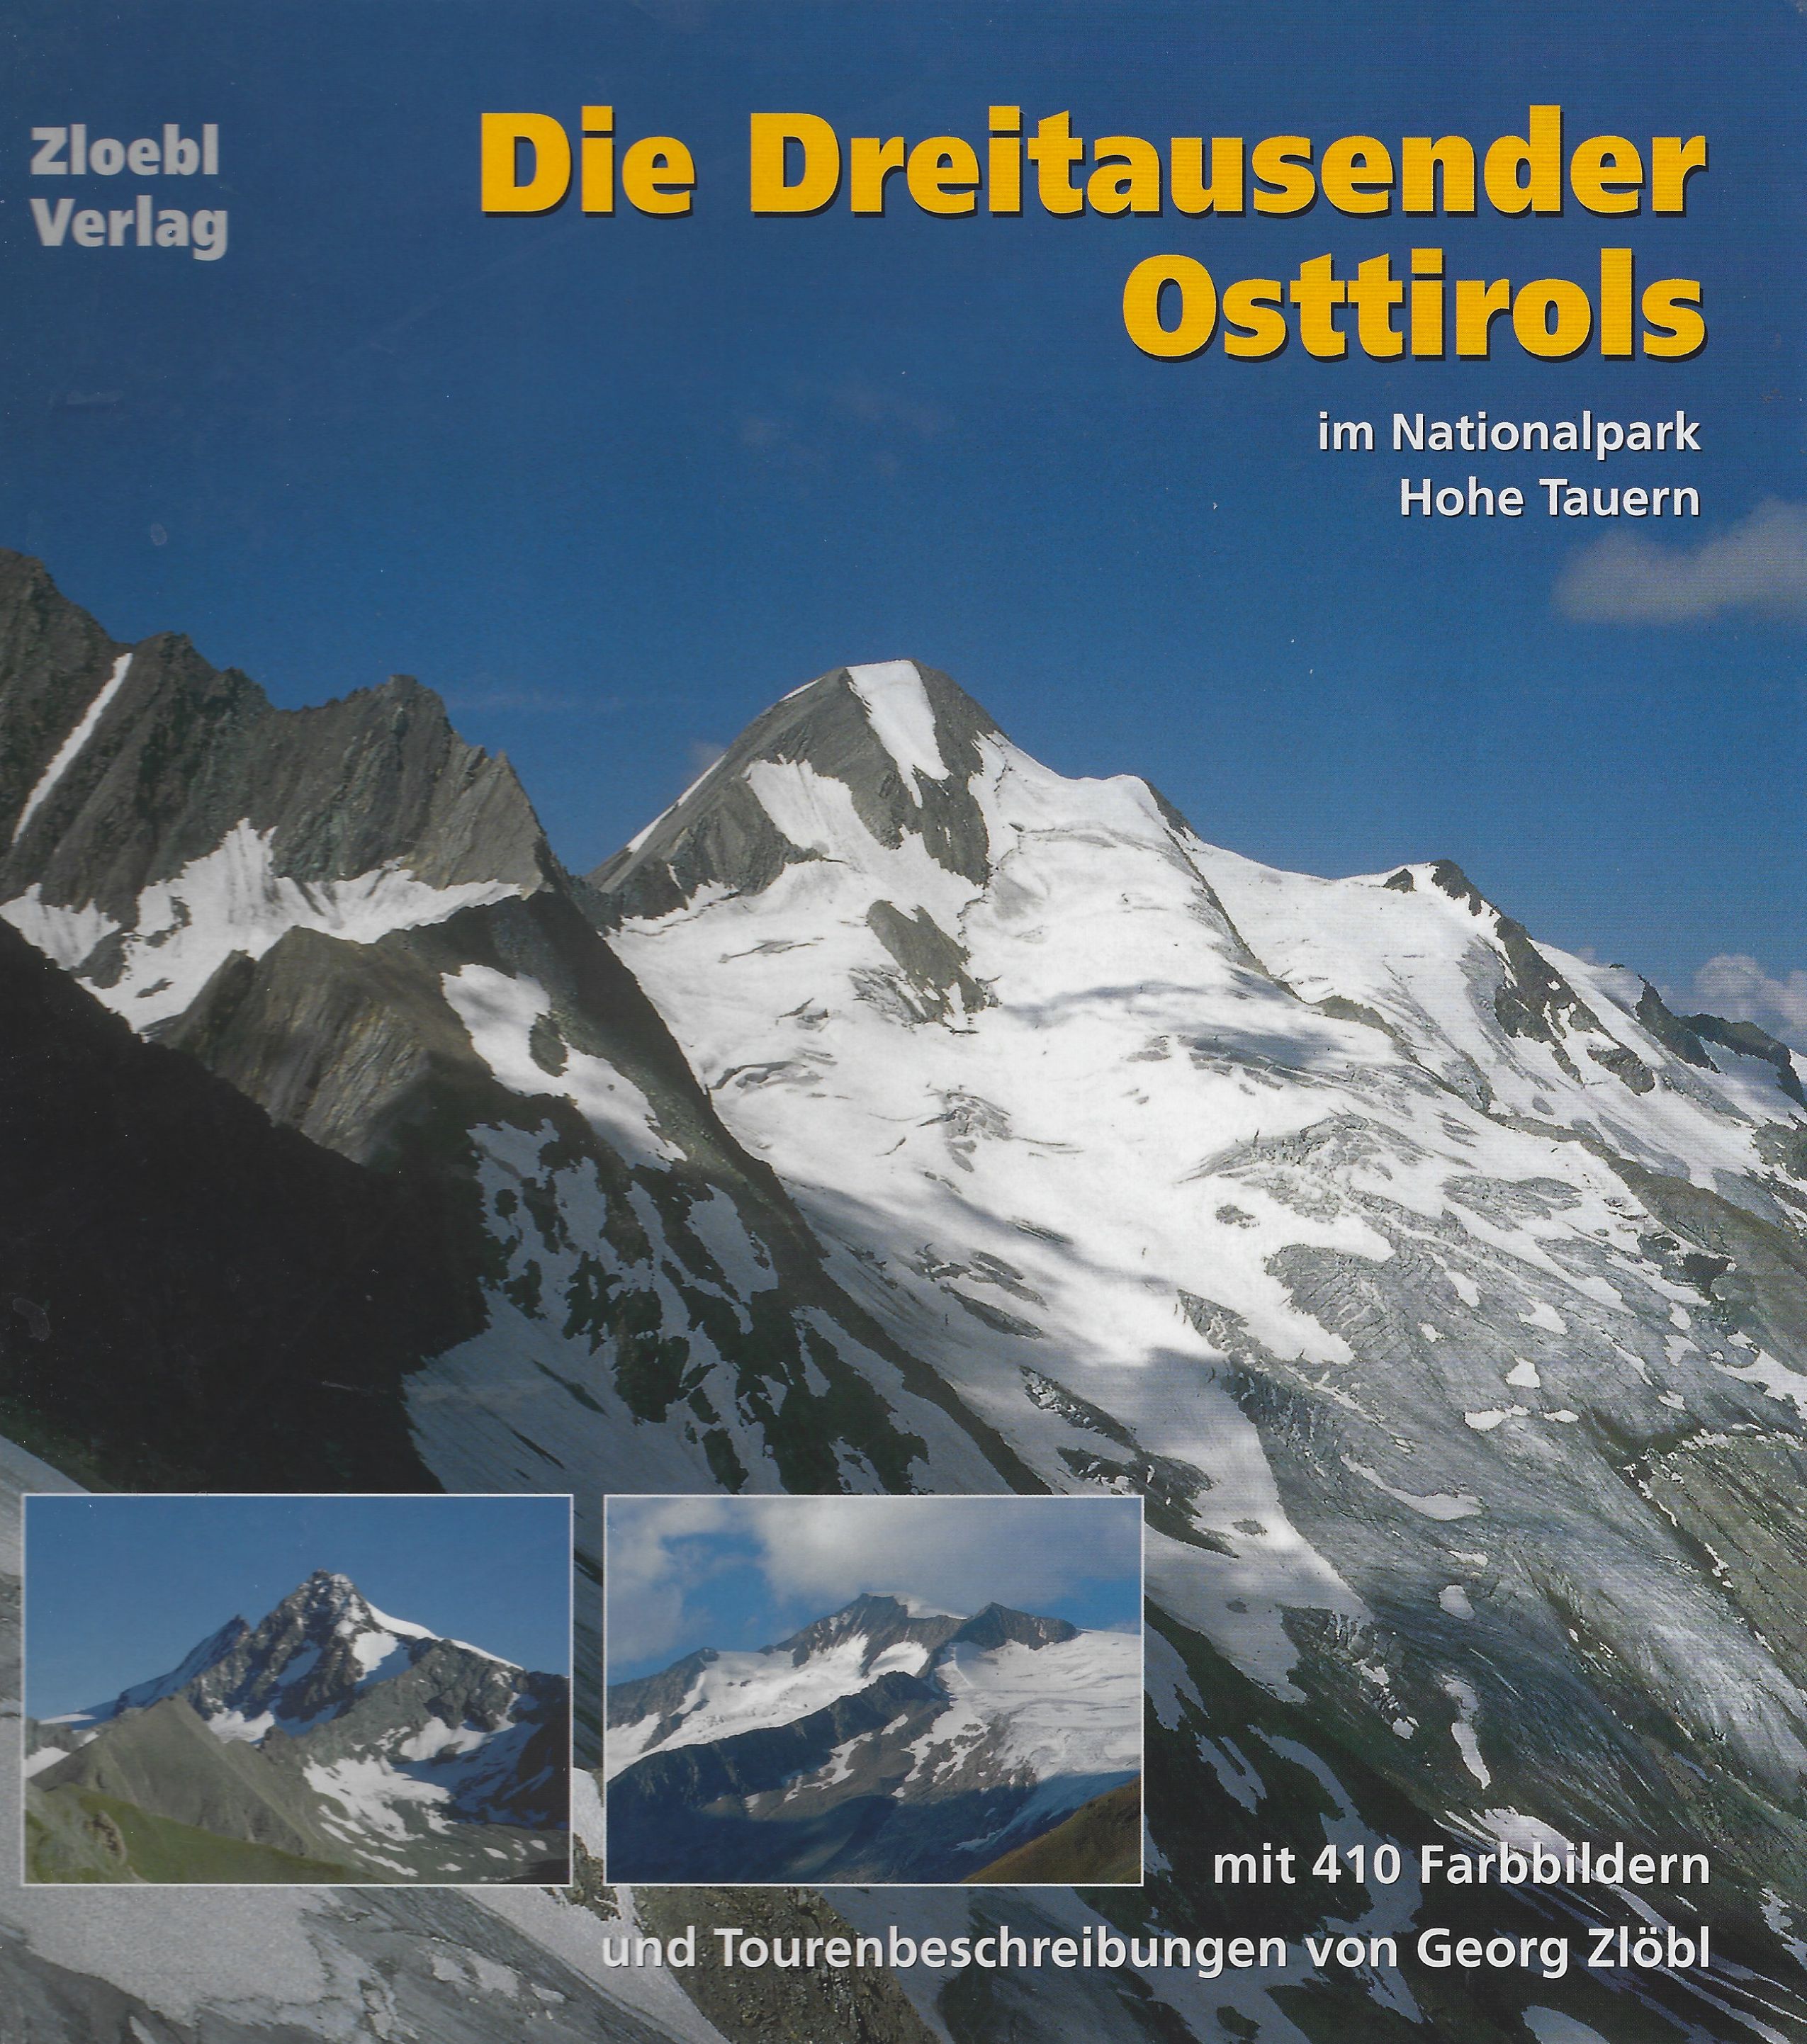 Die Dreitausender Osttirols im Nationalpark Hohe Tauern - ZLOEBL, Georg